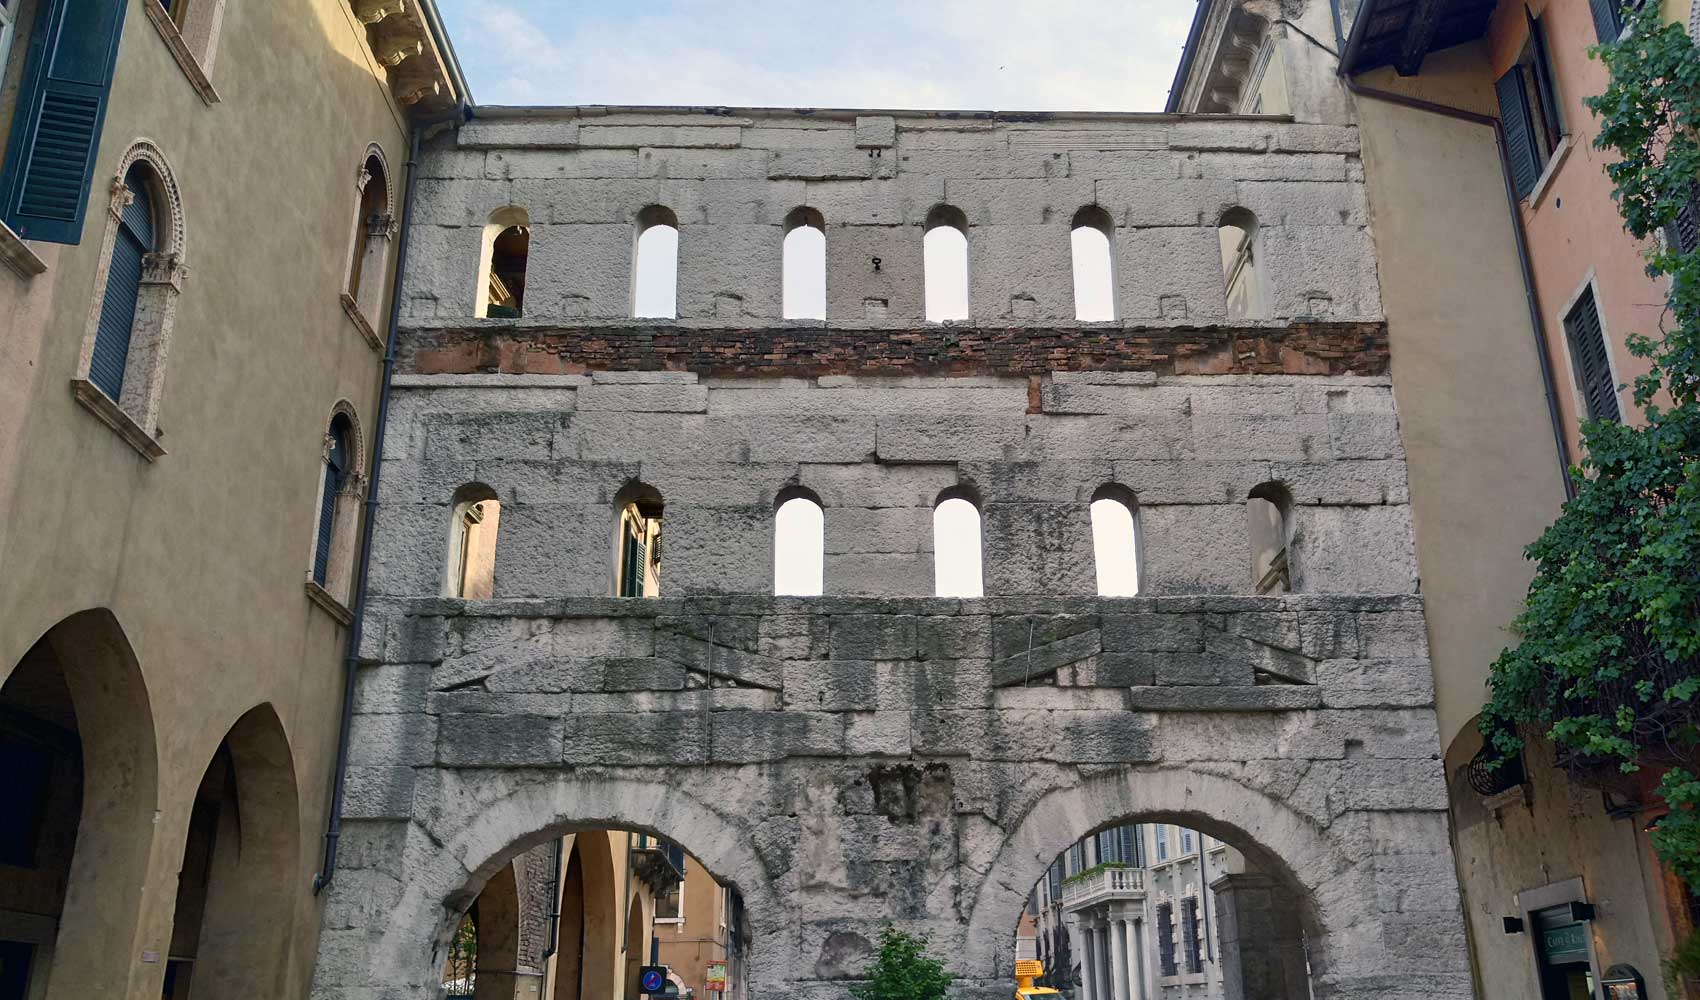 Das antike Borsari - Tor in der Altstadt von Verona.